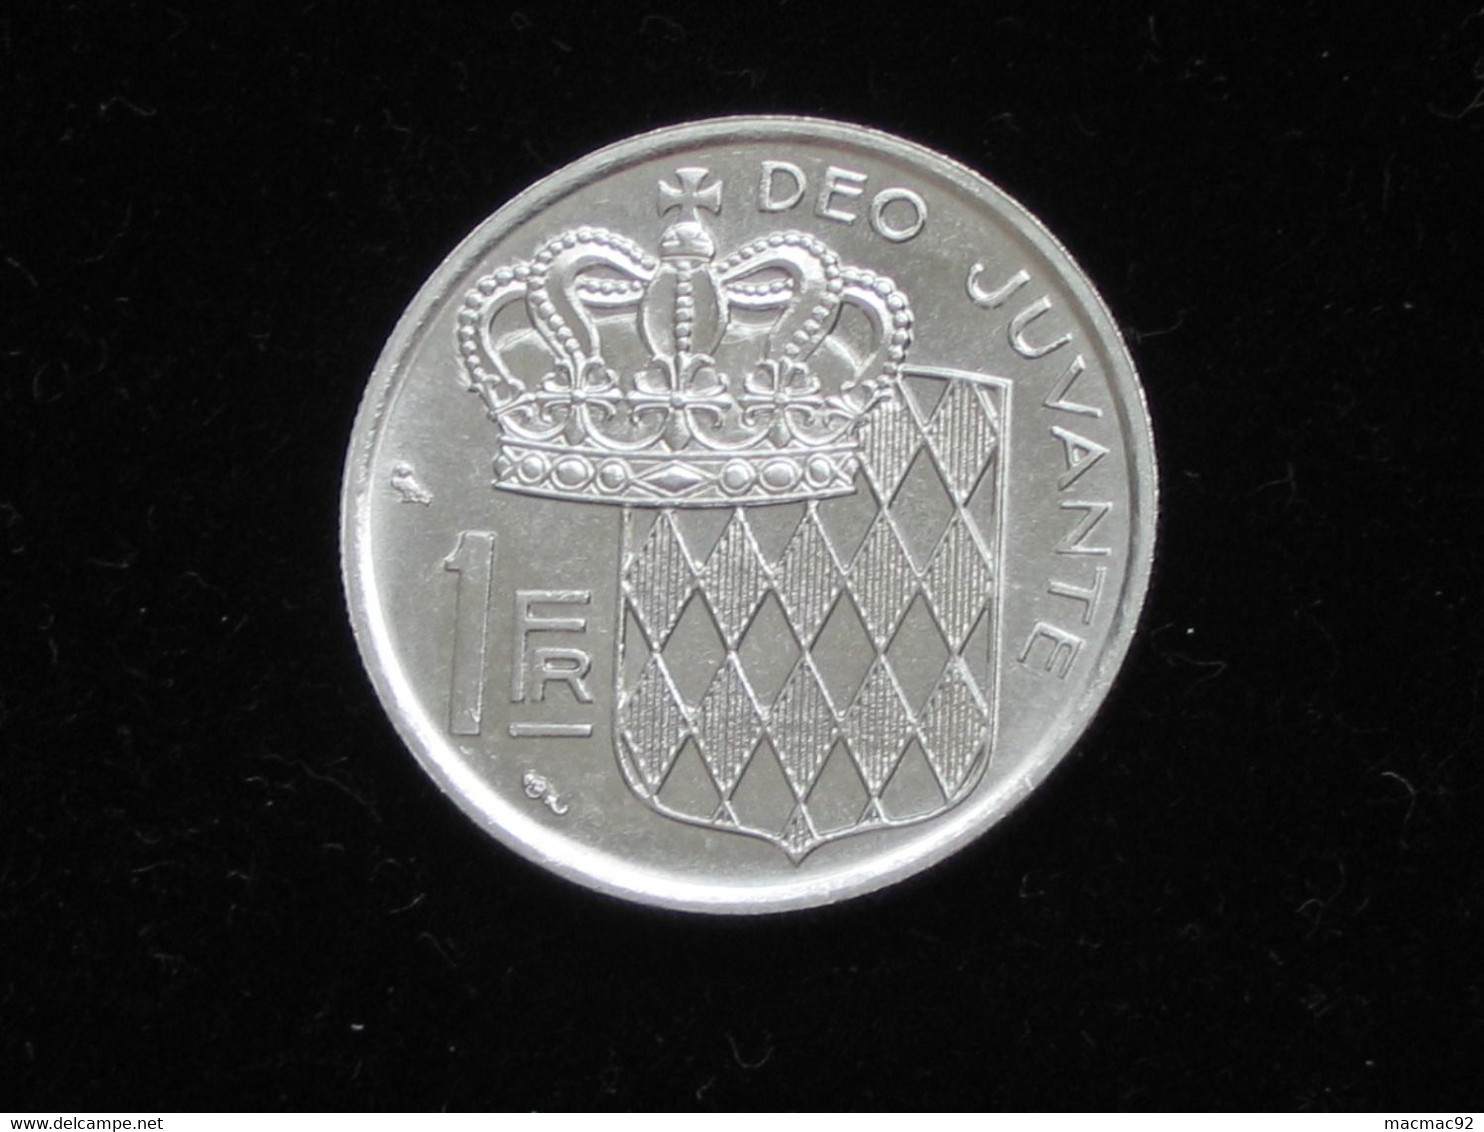 MONACO - 1 Franc 1969 - Rainier III Prince De Monaco **** EN ACHAT IMMEDIAT **** - 1949-1956 Francos Antiguos